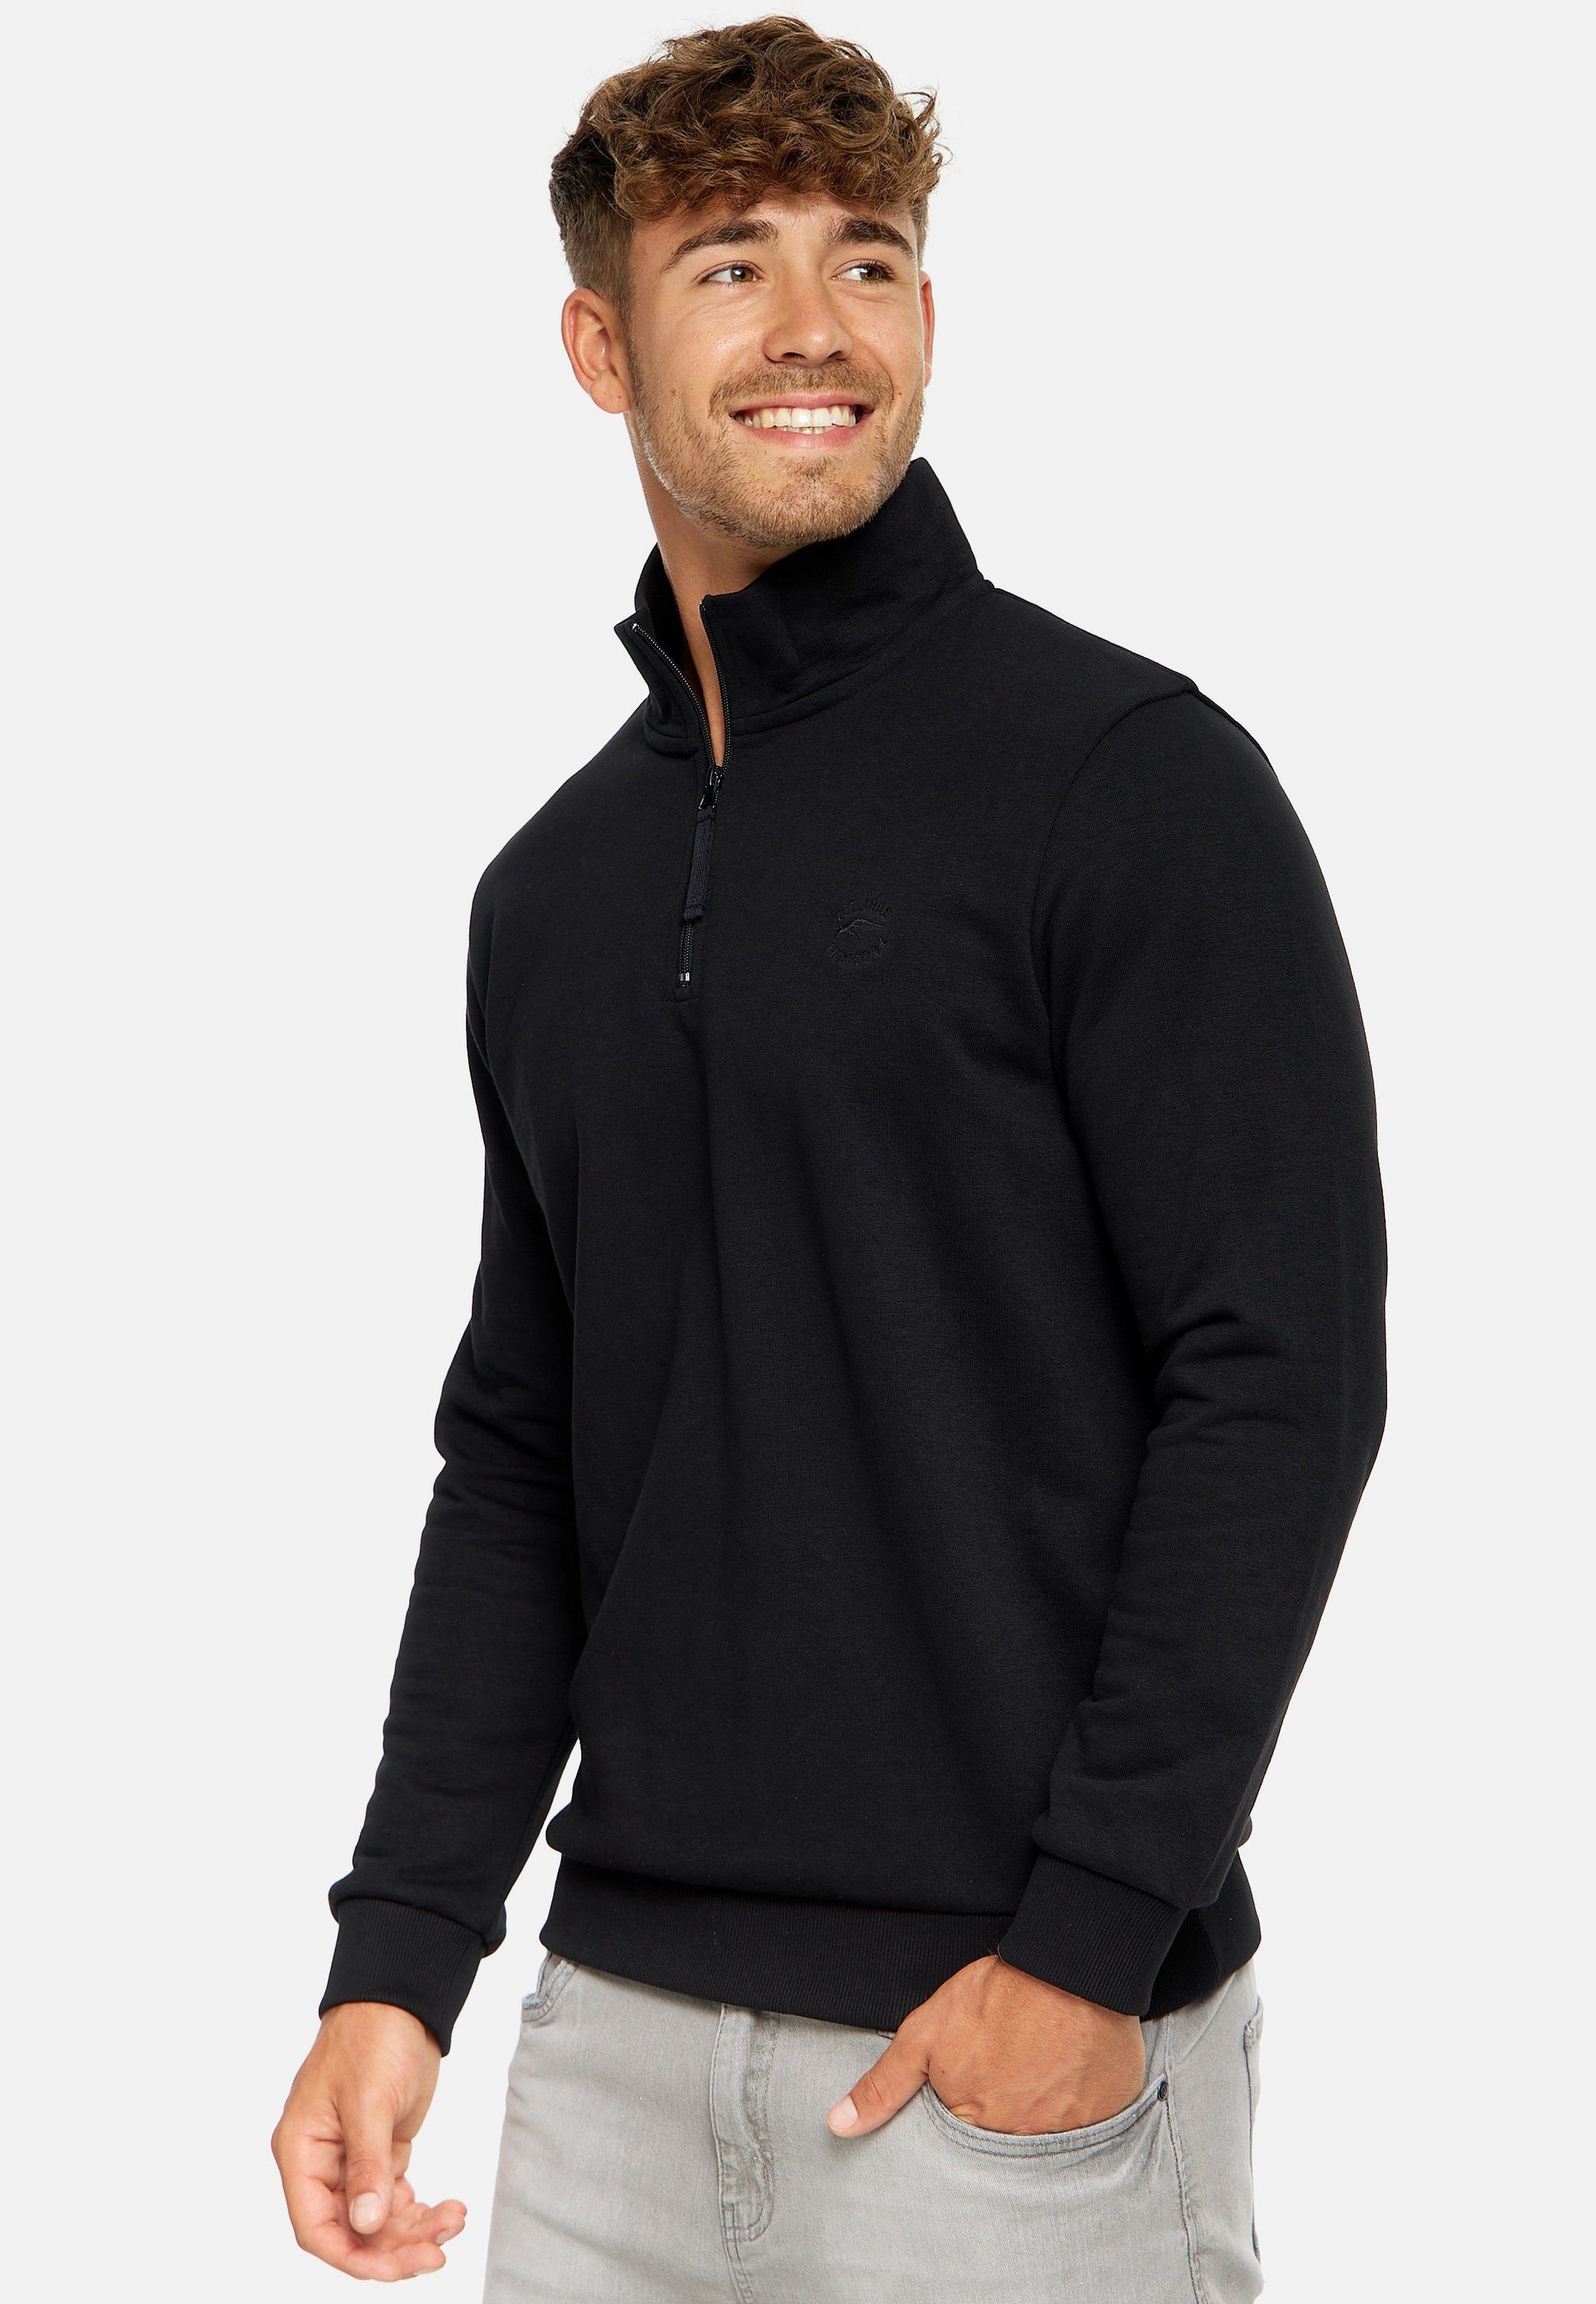 Black INBrandt Sweater Indicode